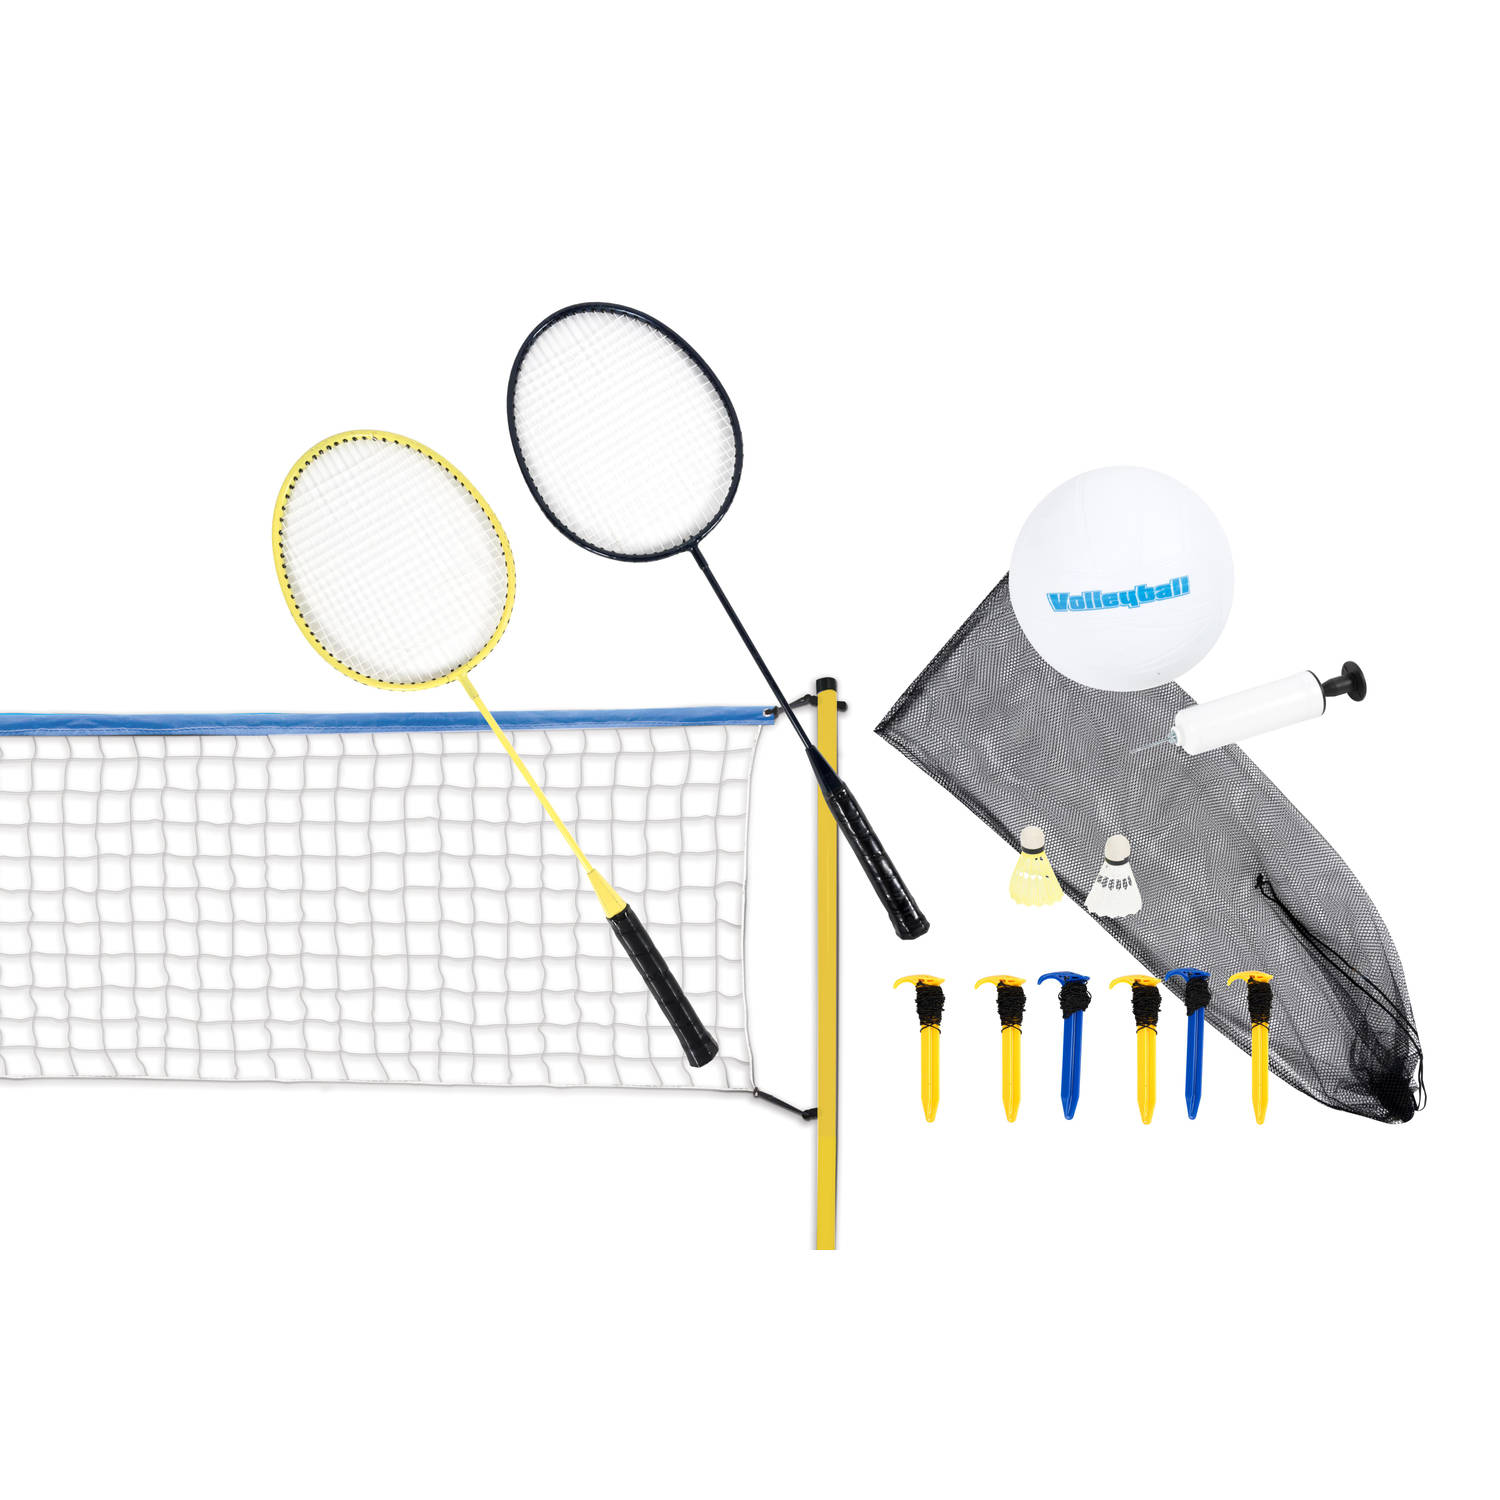 Scatch volleybal- en badmintonset met net, rackets, shuttles en bal draagtas 310 x 168 cm